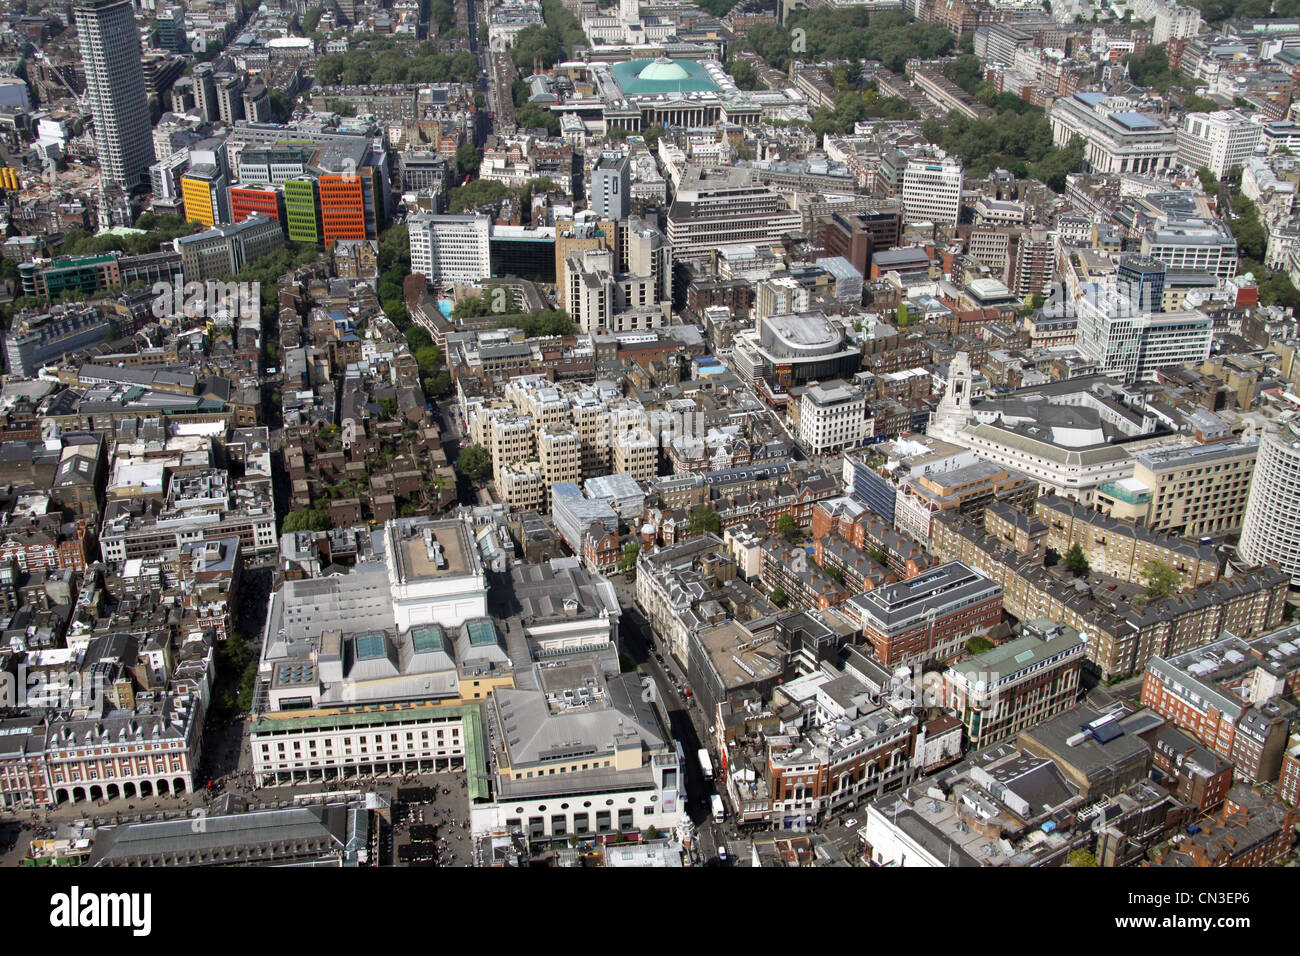 Vue aérienne de Covent Garden, Drury Lane, The Strand & Aldwych, Londres Banque D'Images